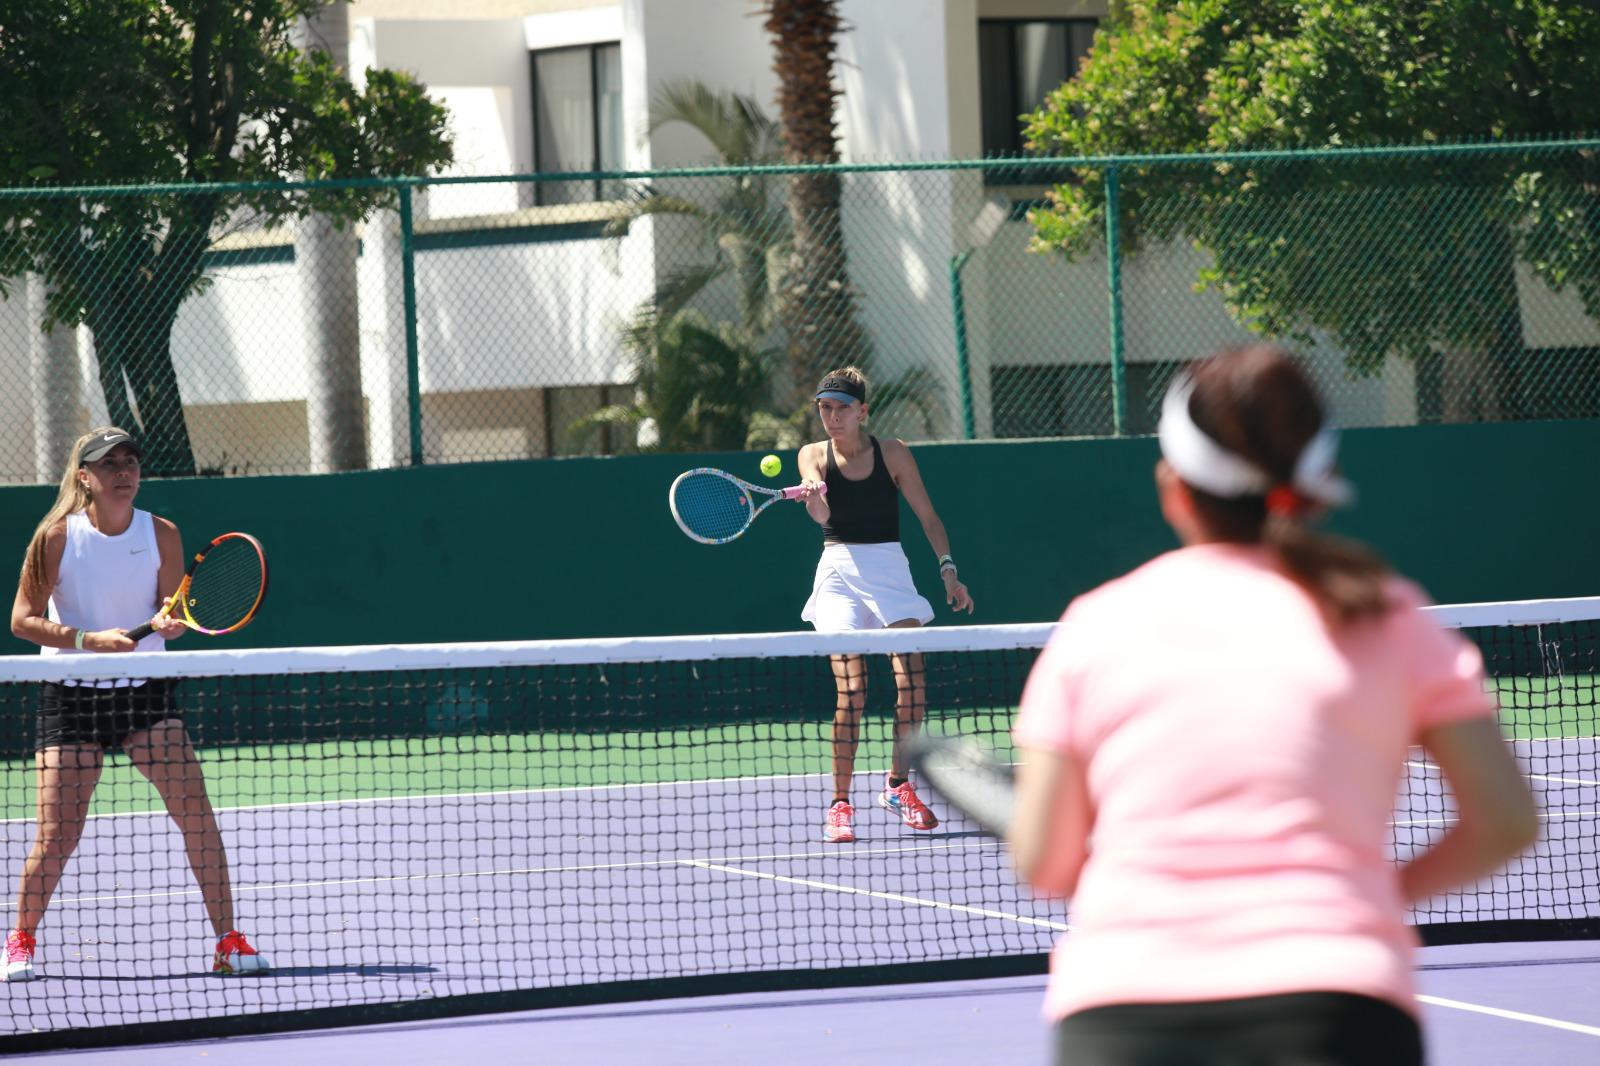 $!Brindan damas derroche de técnica en Tenis Agave, en Casa Club del Cid